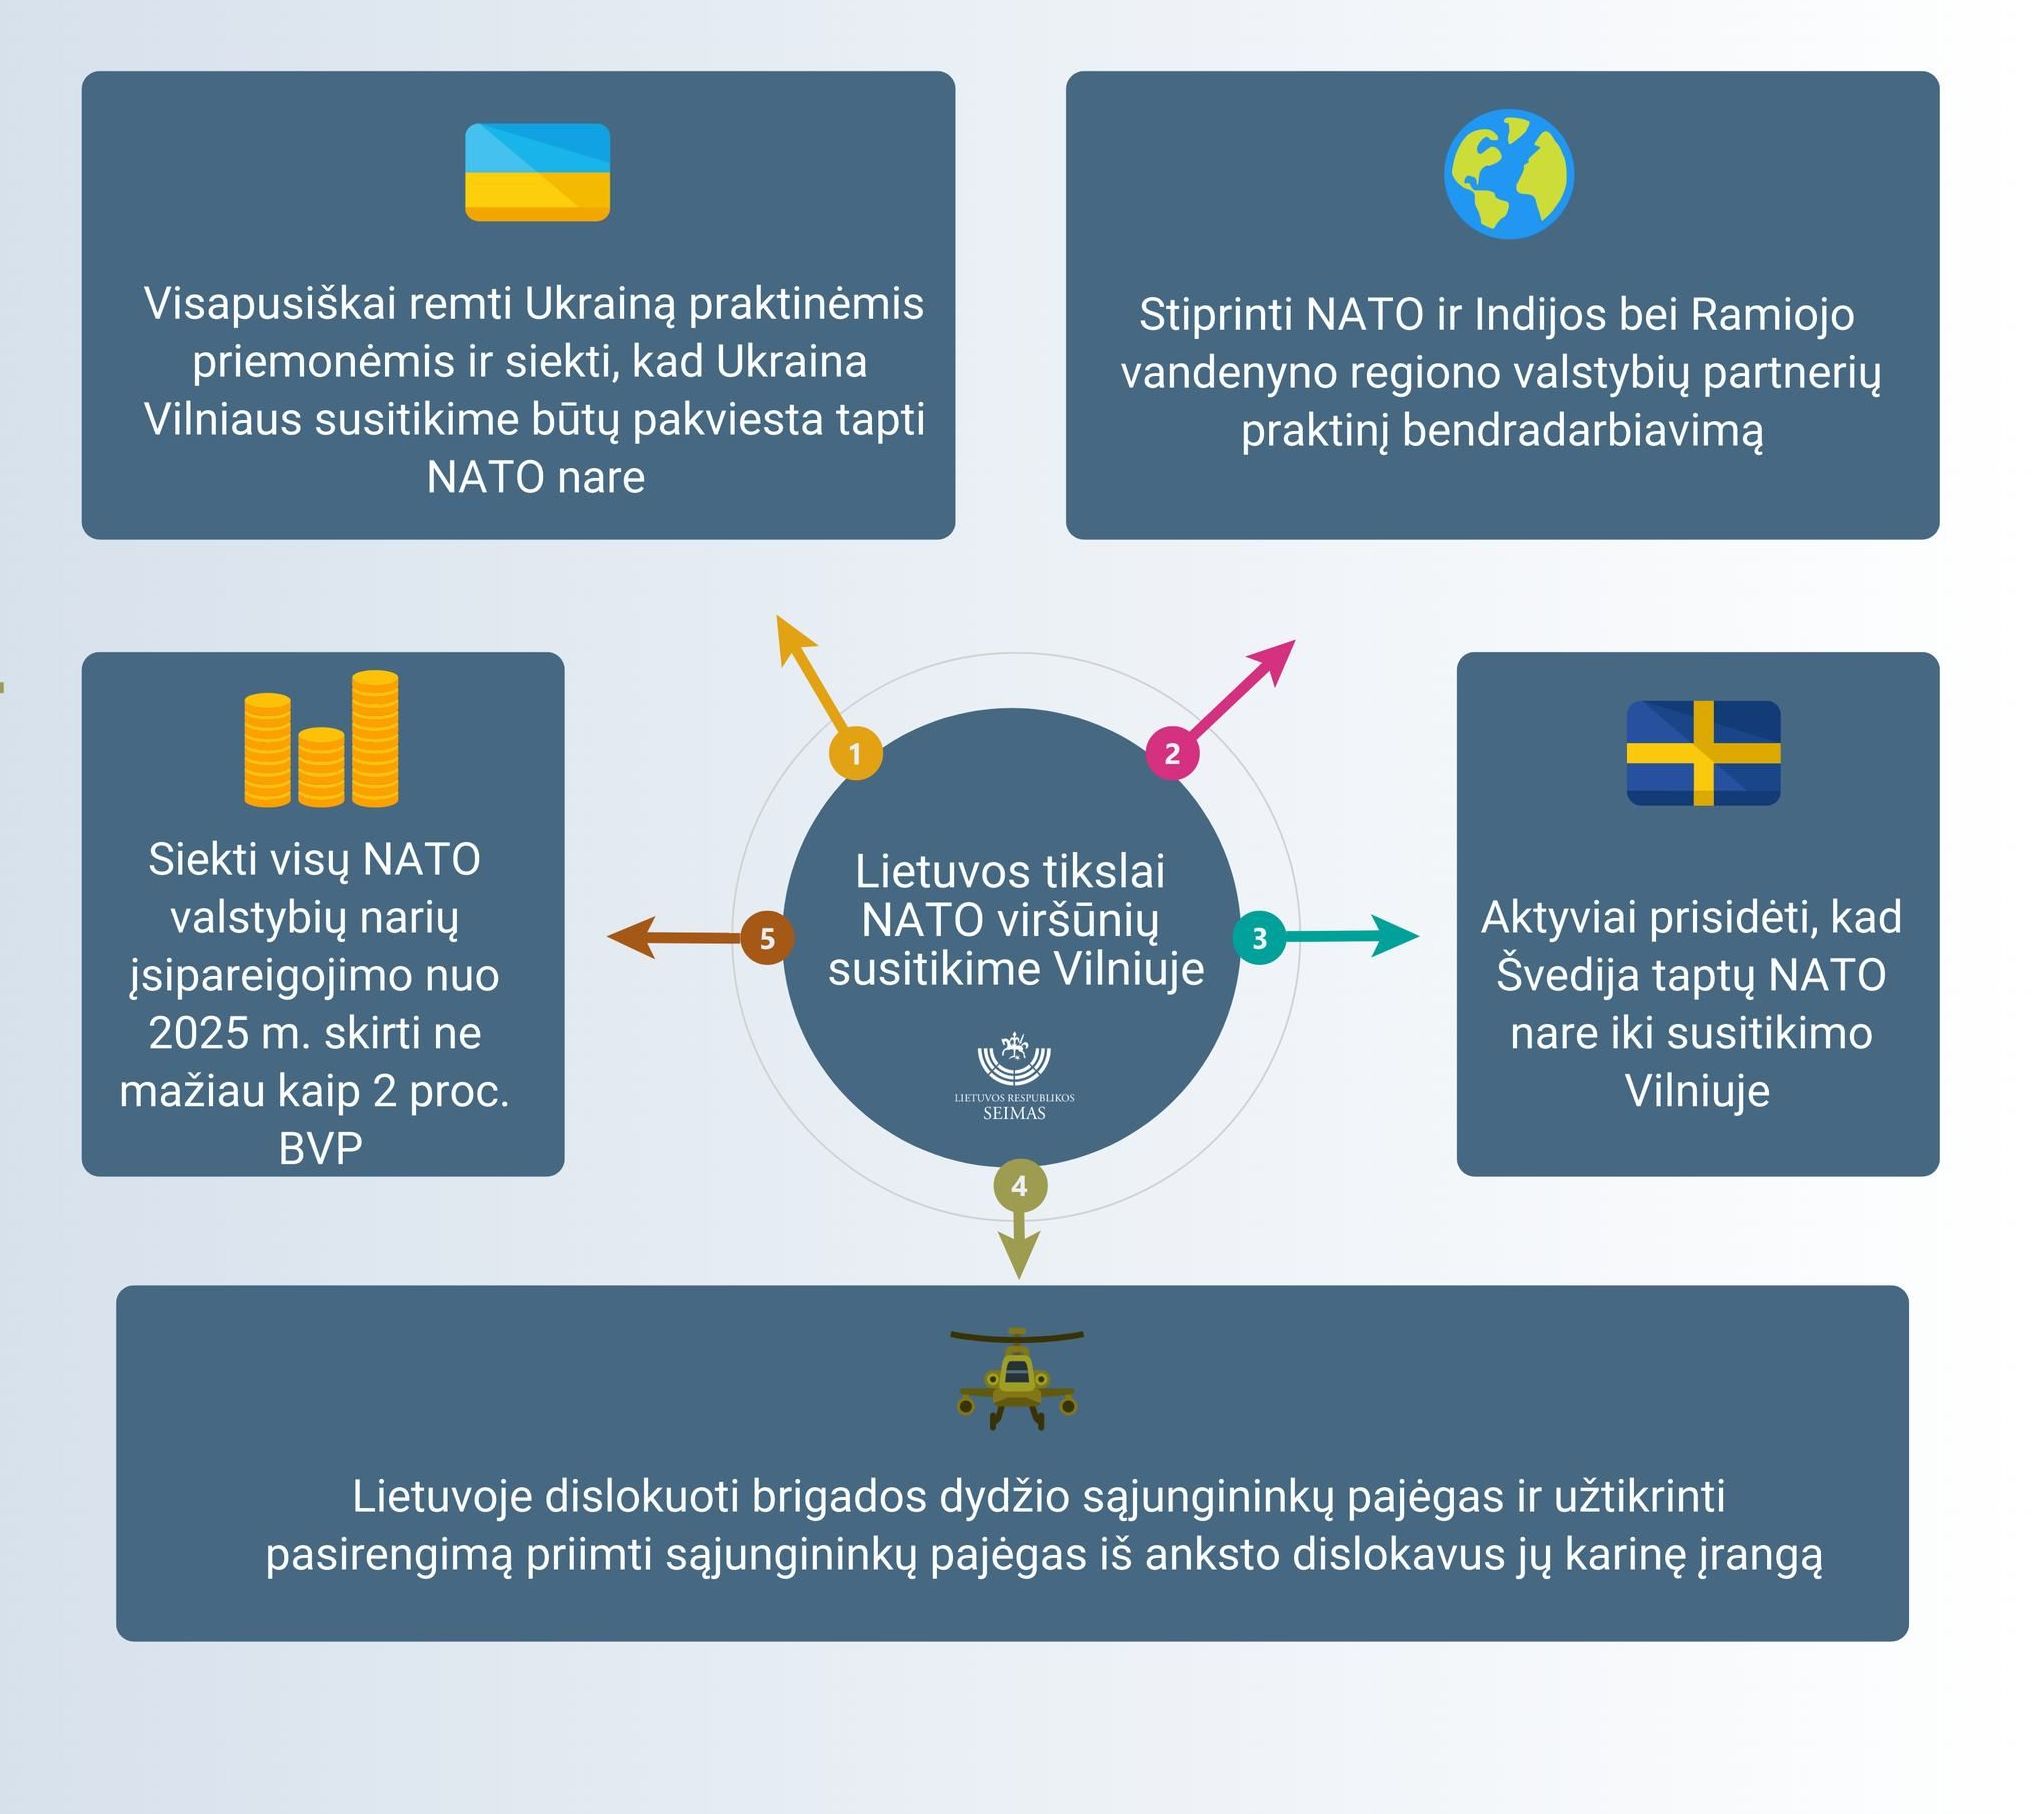 Инфографика "Основные цели нашей страны на саммите НАТО"